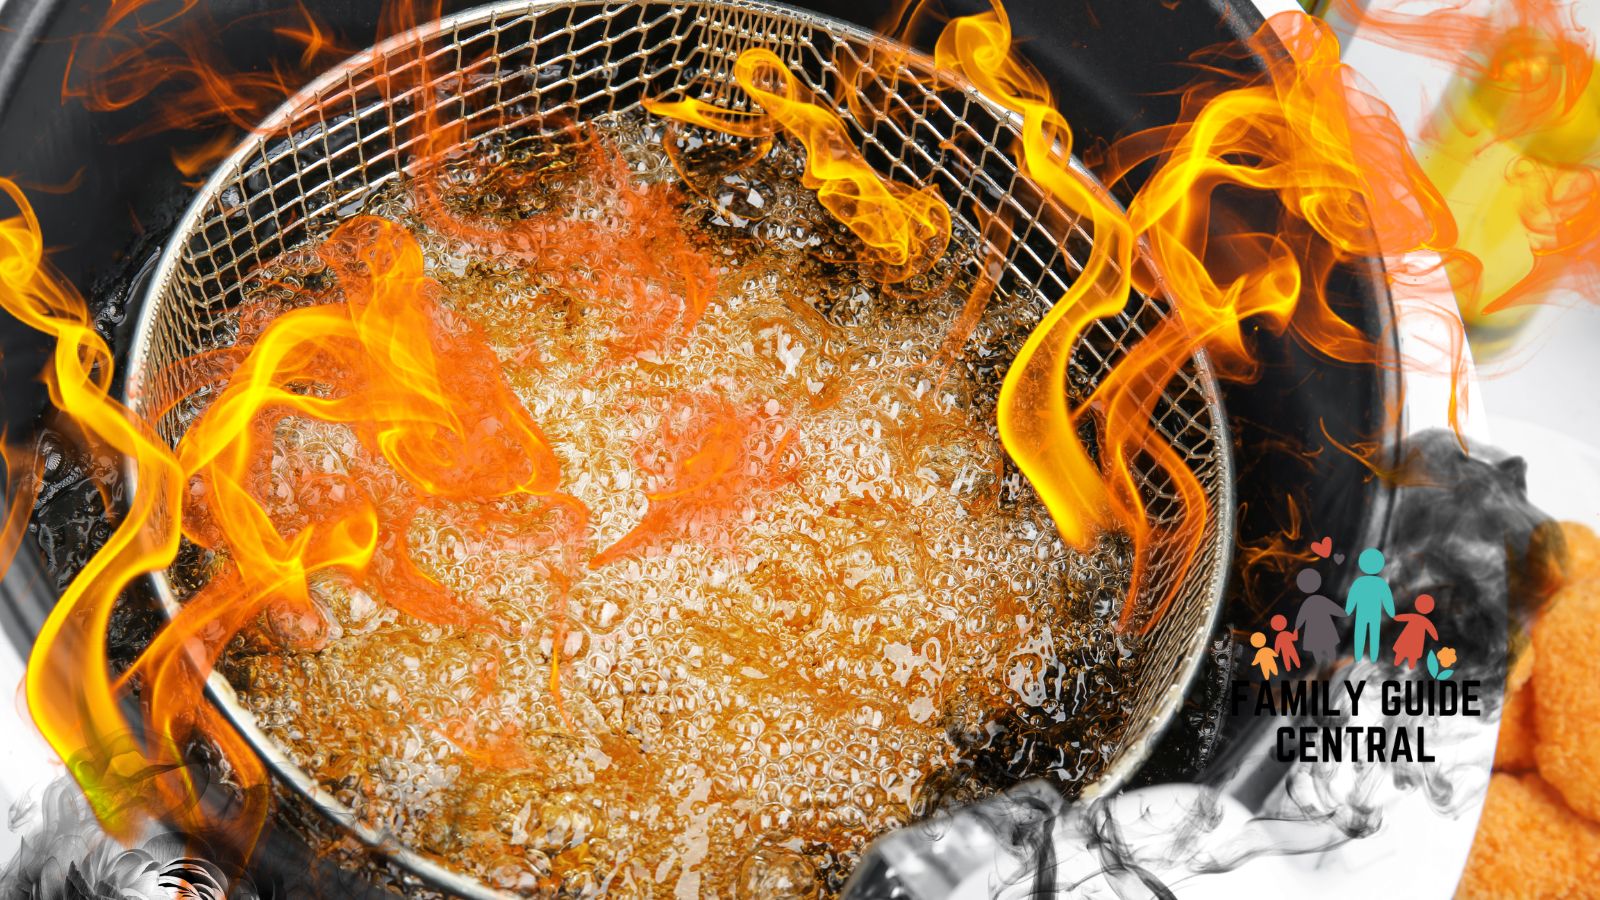 Deep fryer on fire - familyguidecentral.com